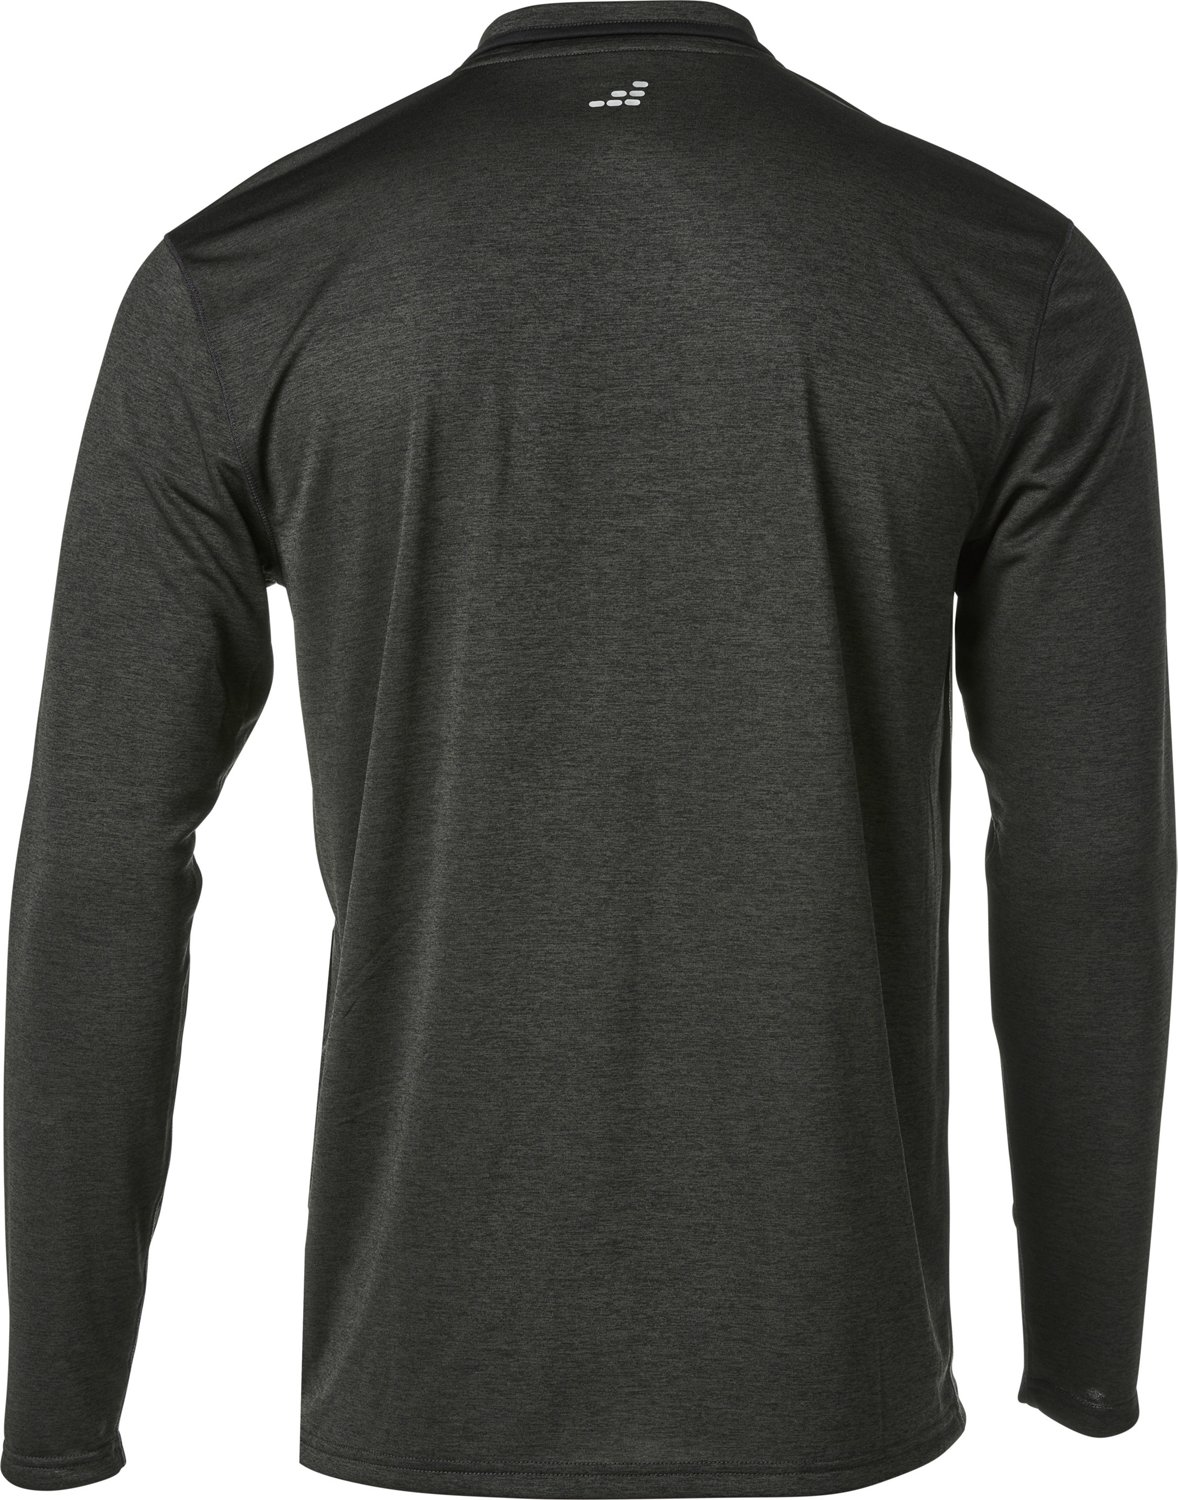 BCG Men’s Turbo Melange Half Zipper Sweatshirt                                                                                 - view number 2